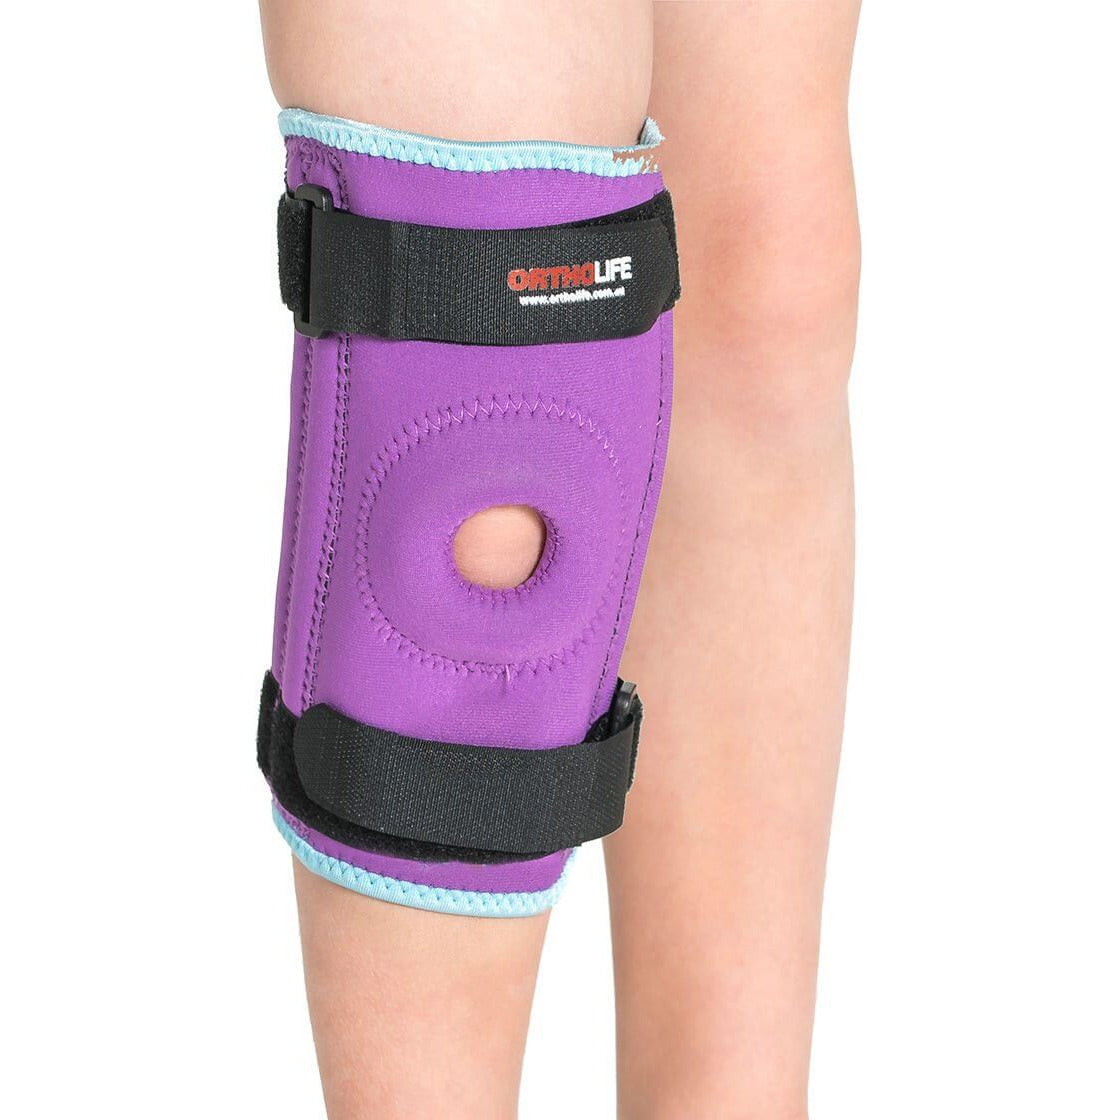 Ortholife - Paediatric neoprene stabilised knee brace - 6-7 years 25.5 - 30.5cm